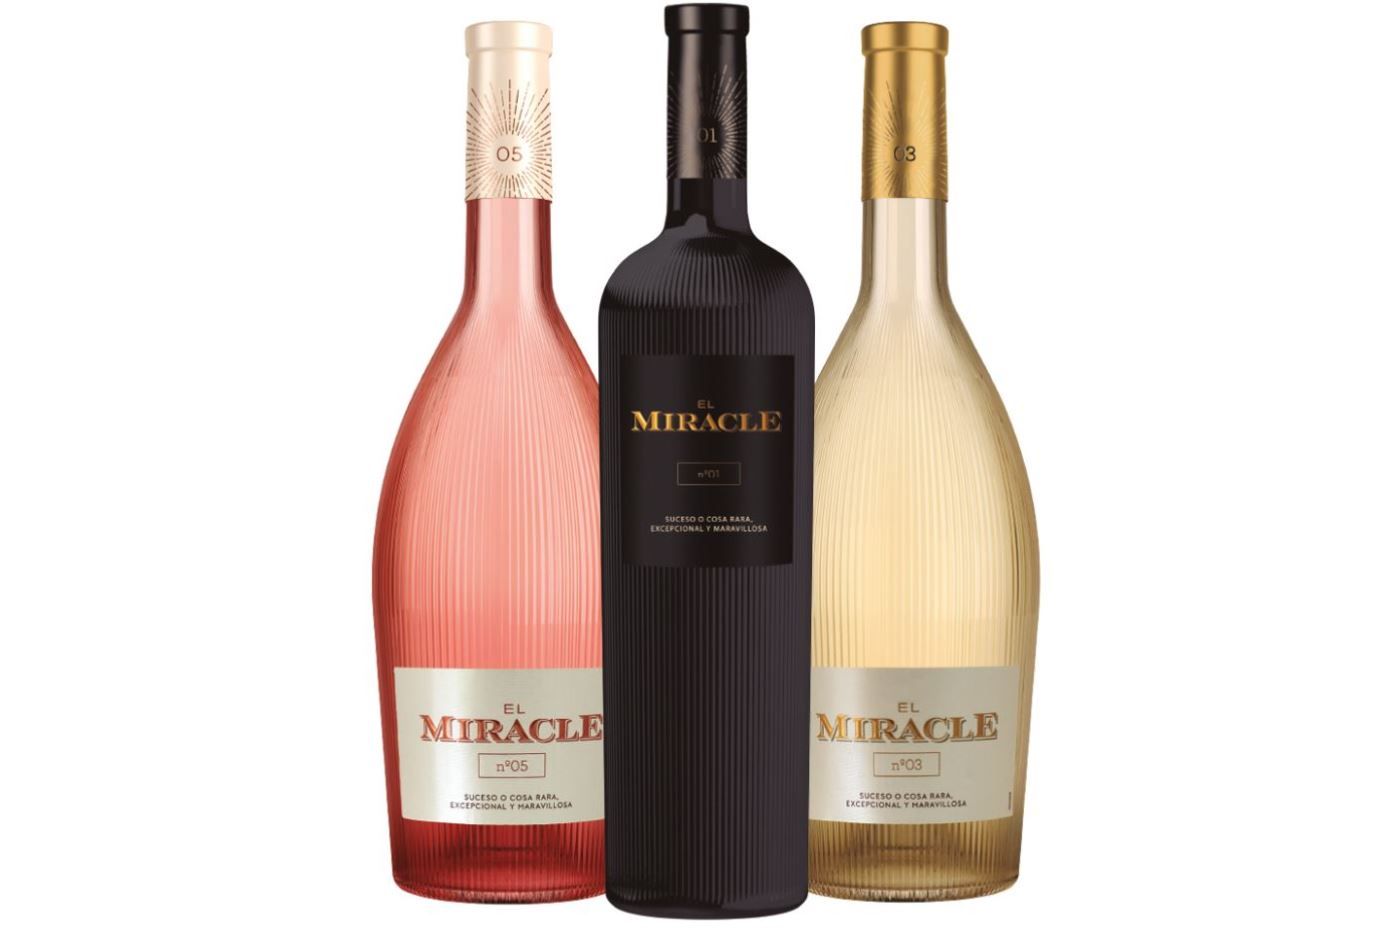 Nº5, Nº3 y Nº1, los tres vinos que componen la colección El Miracle 135 de Vicente Gandia.